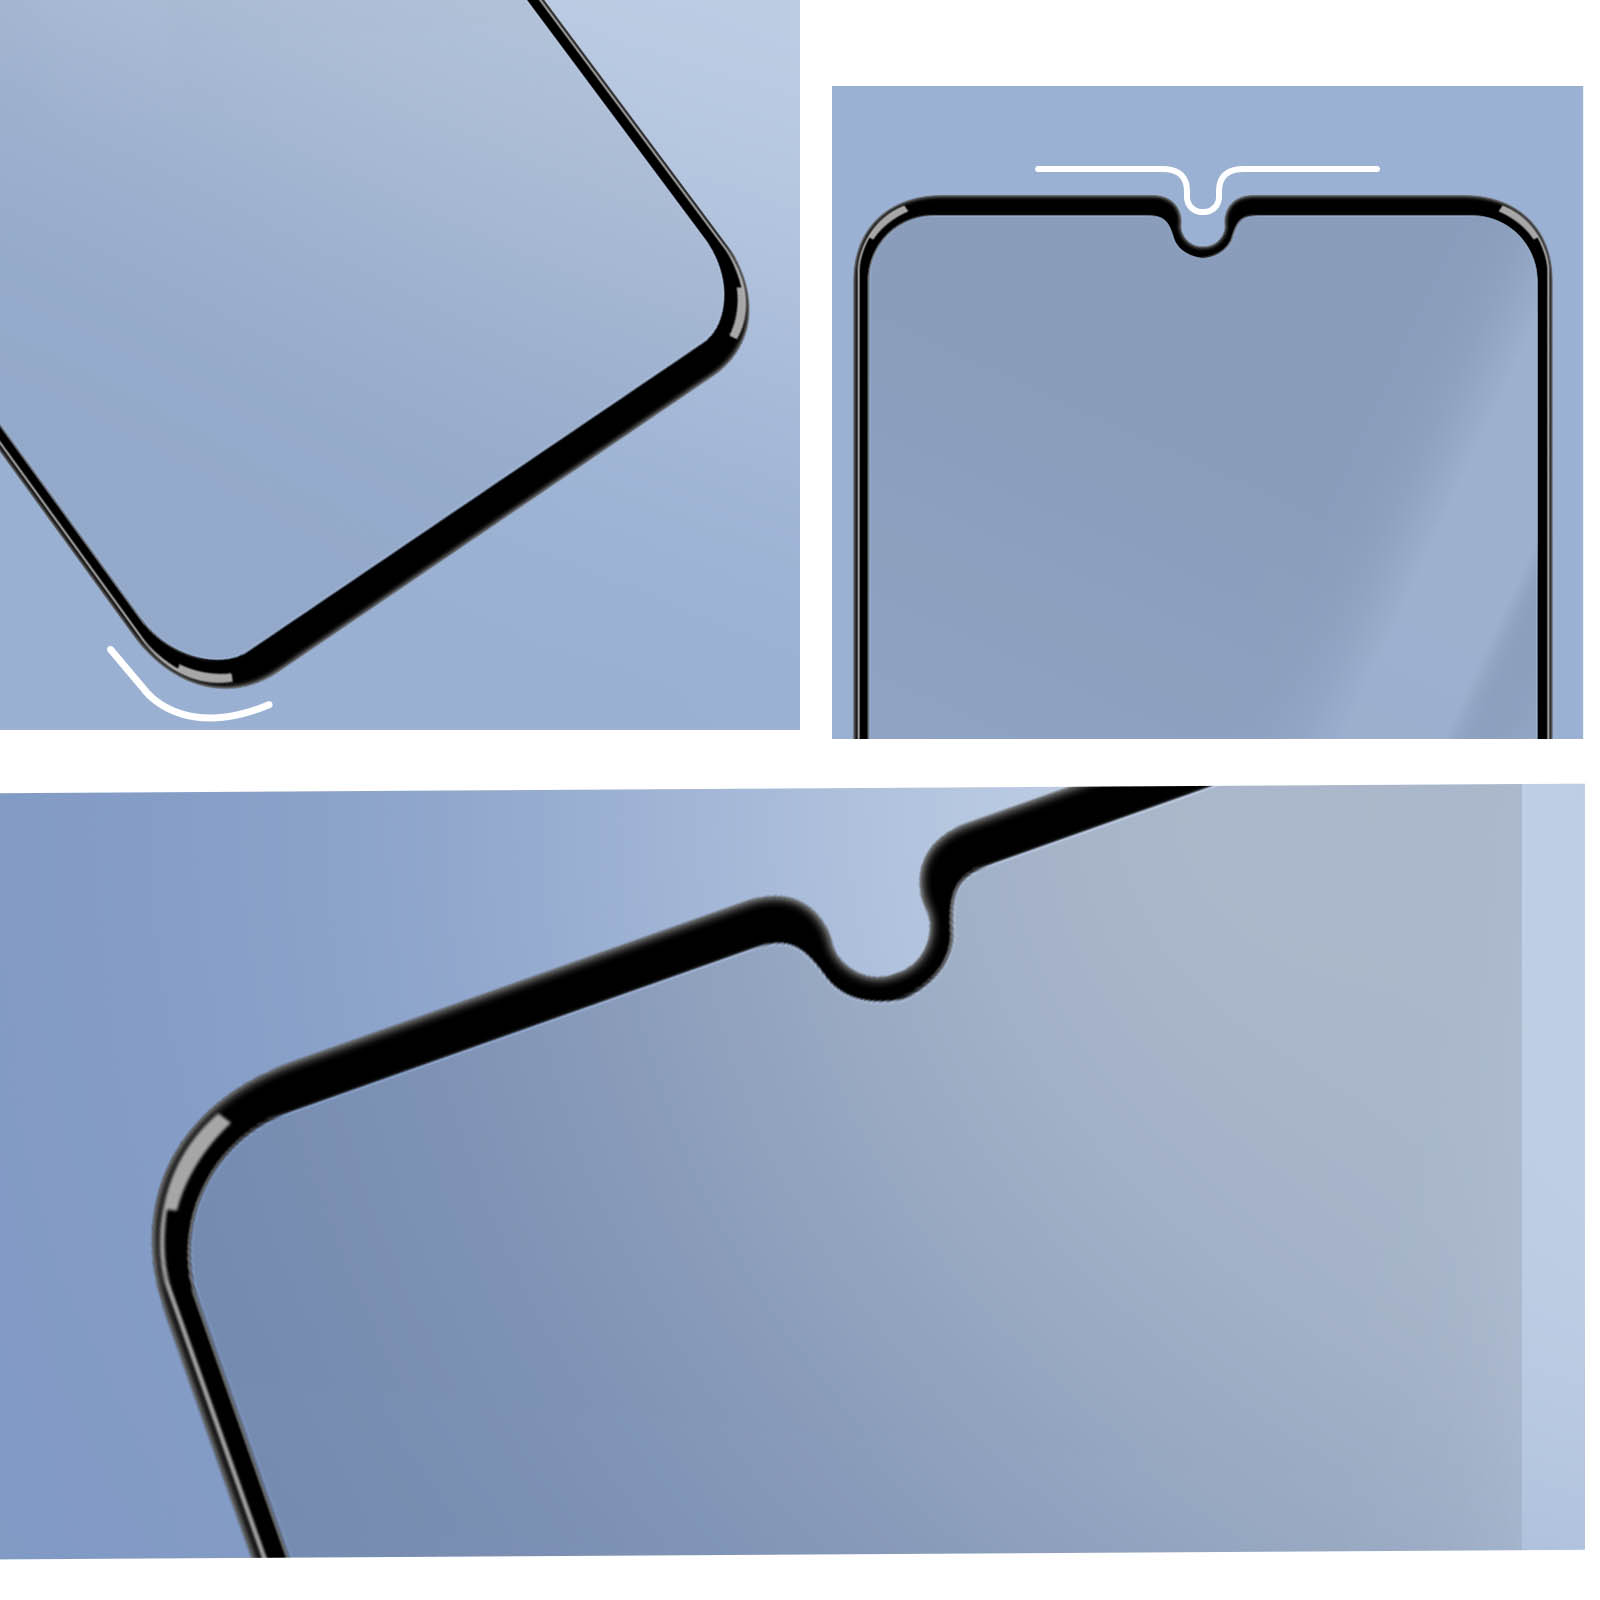 Protection en verre trempé Contours Noirs pour Samsung Galaxy A34